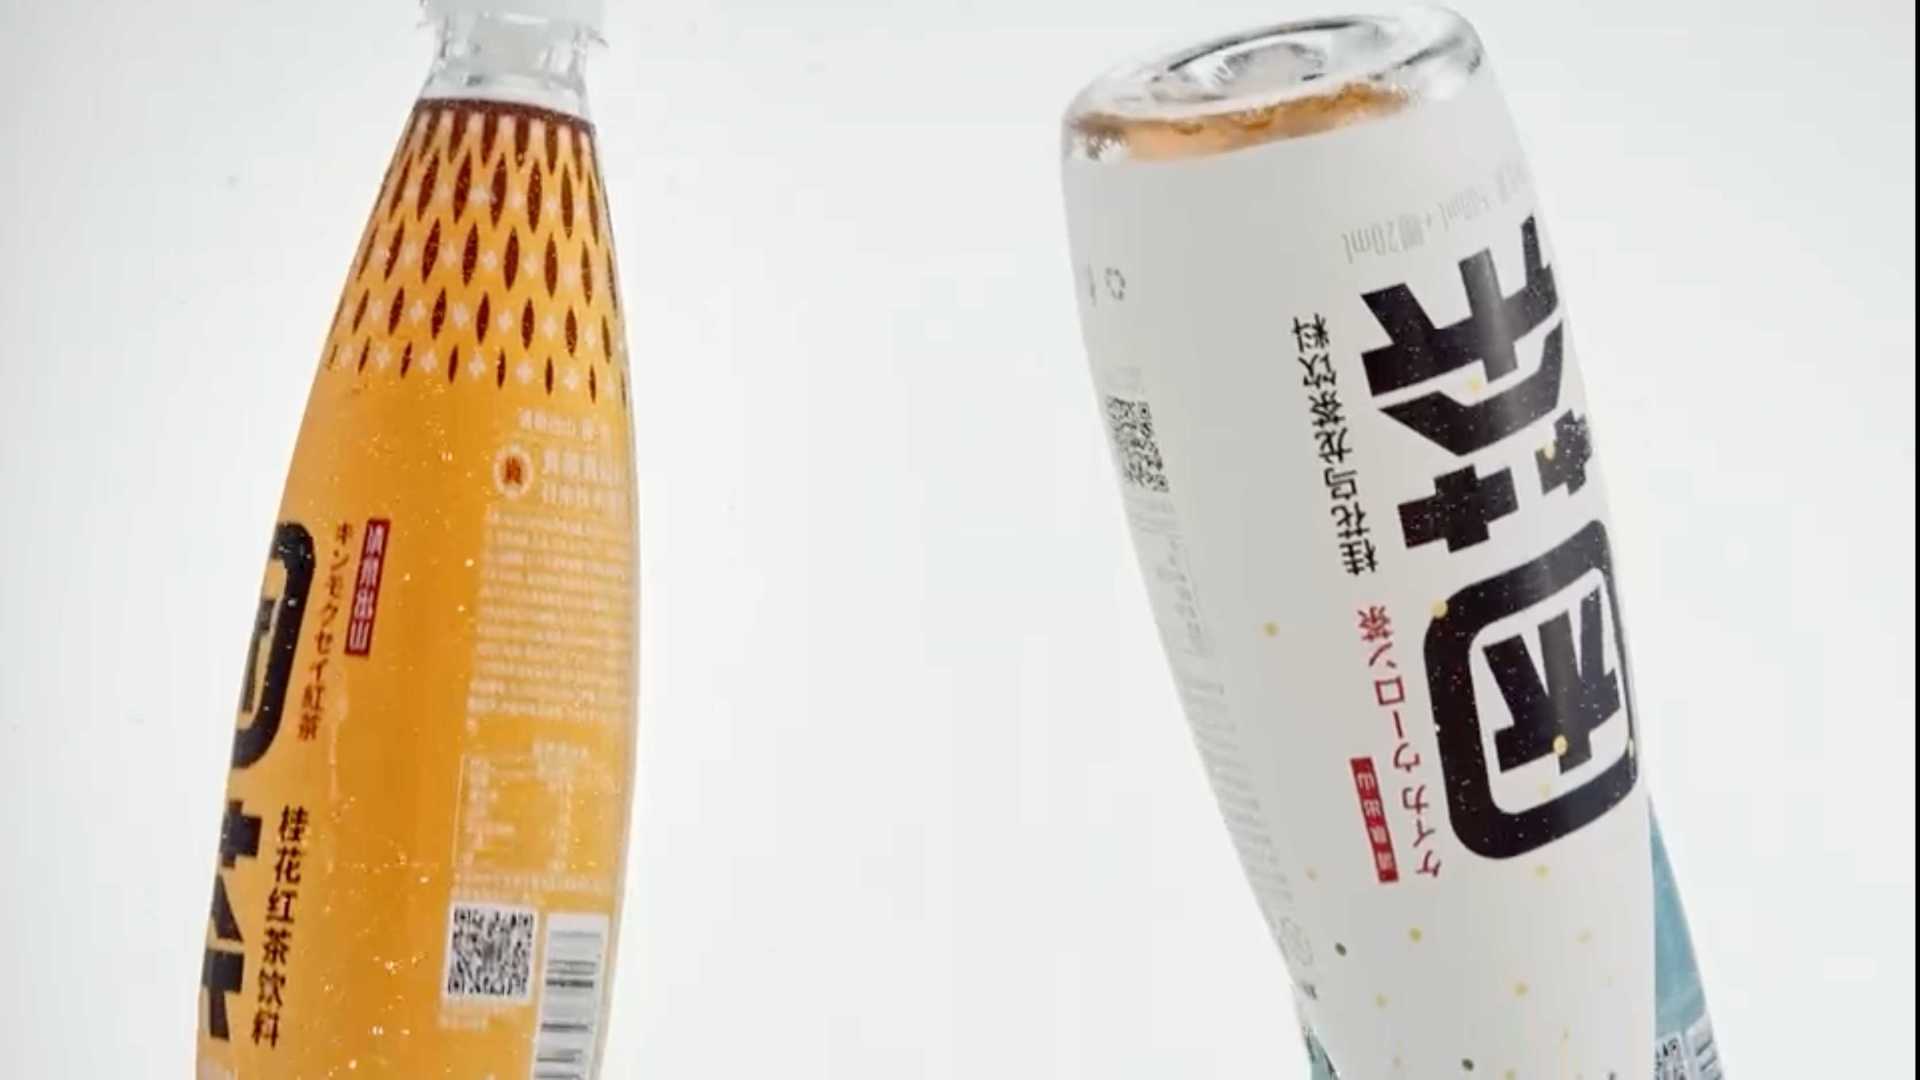 困茶 饮料品牌广告 30秒版